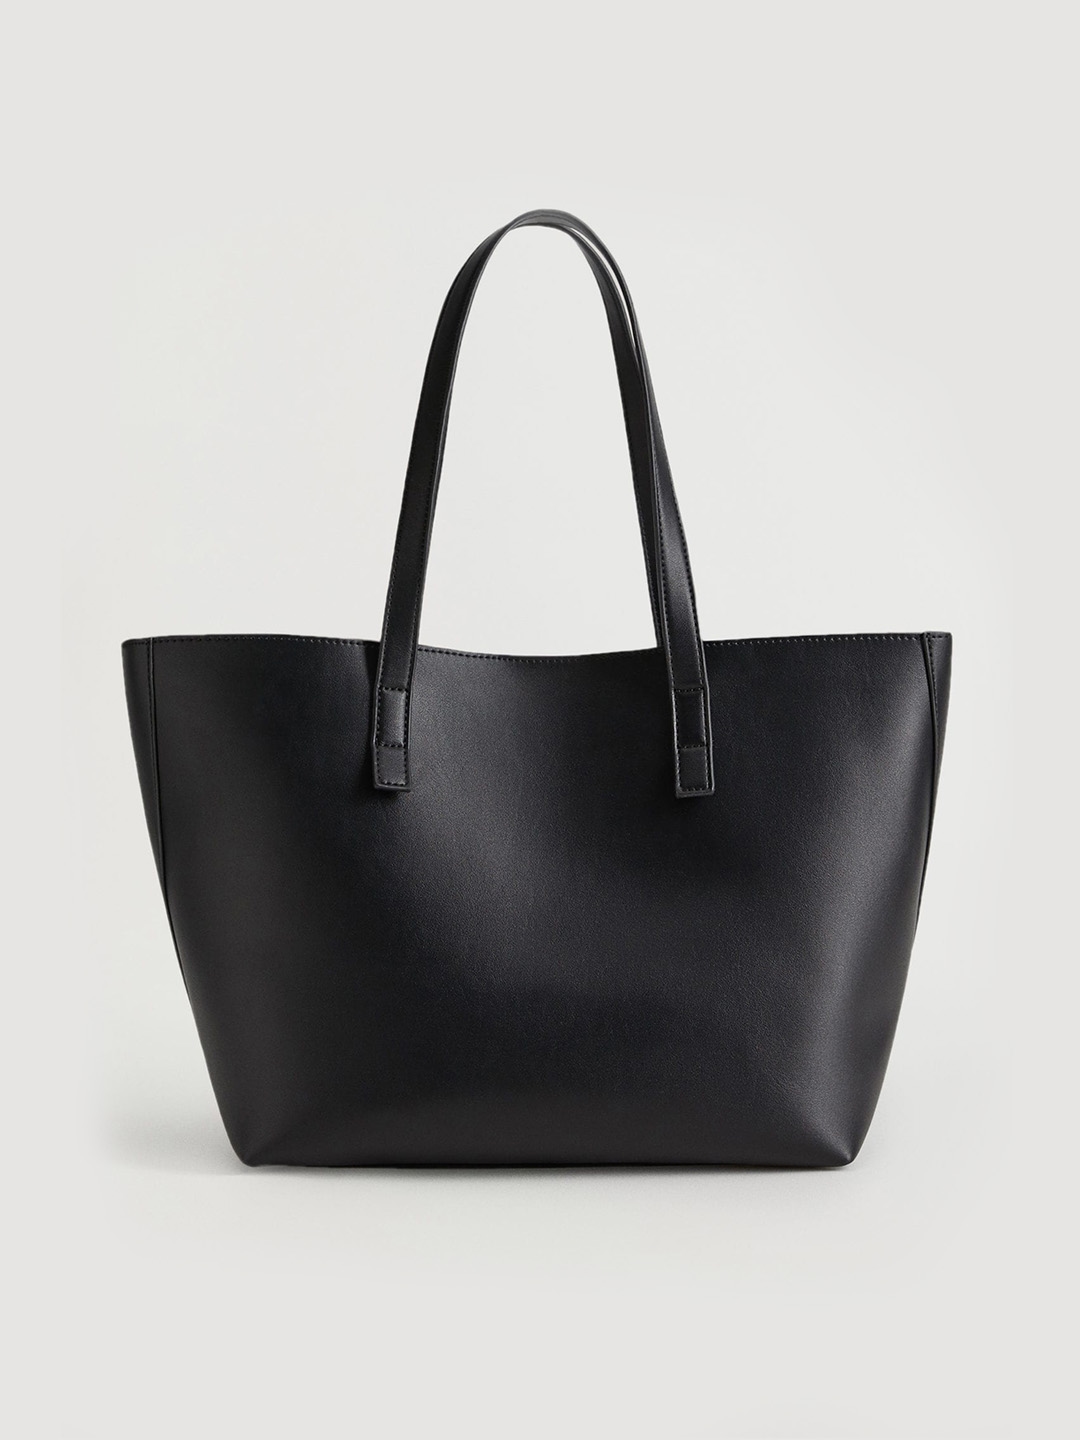 Top QualityLeather Handbag Women MANGO Bag Elegant Sling Bag Shoulder Bag |  Lazada